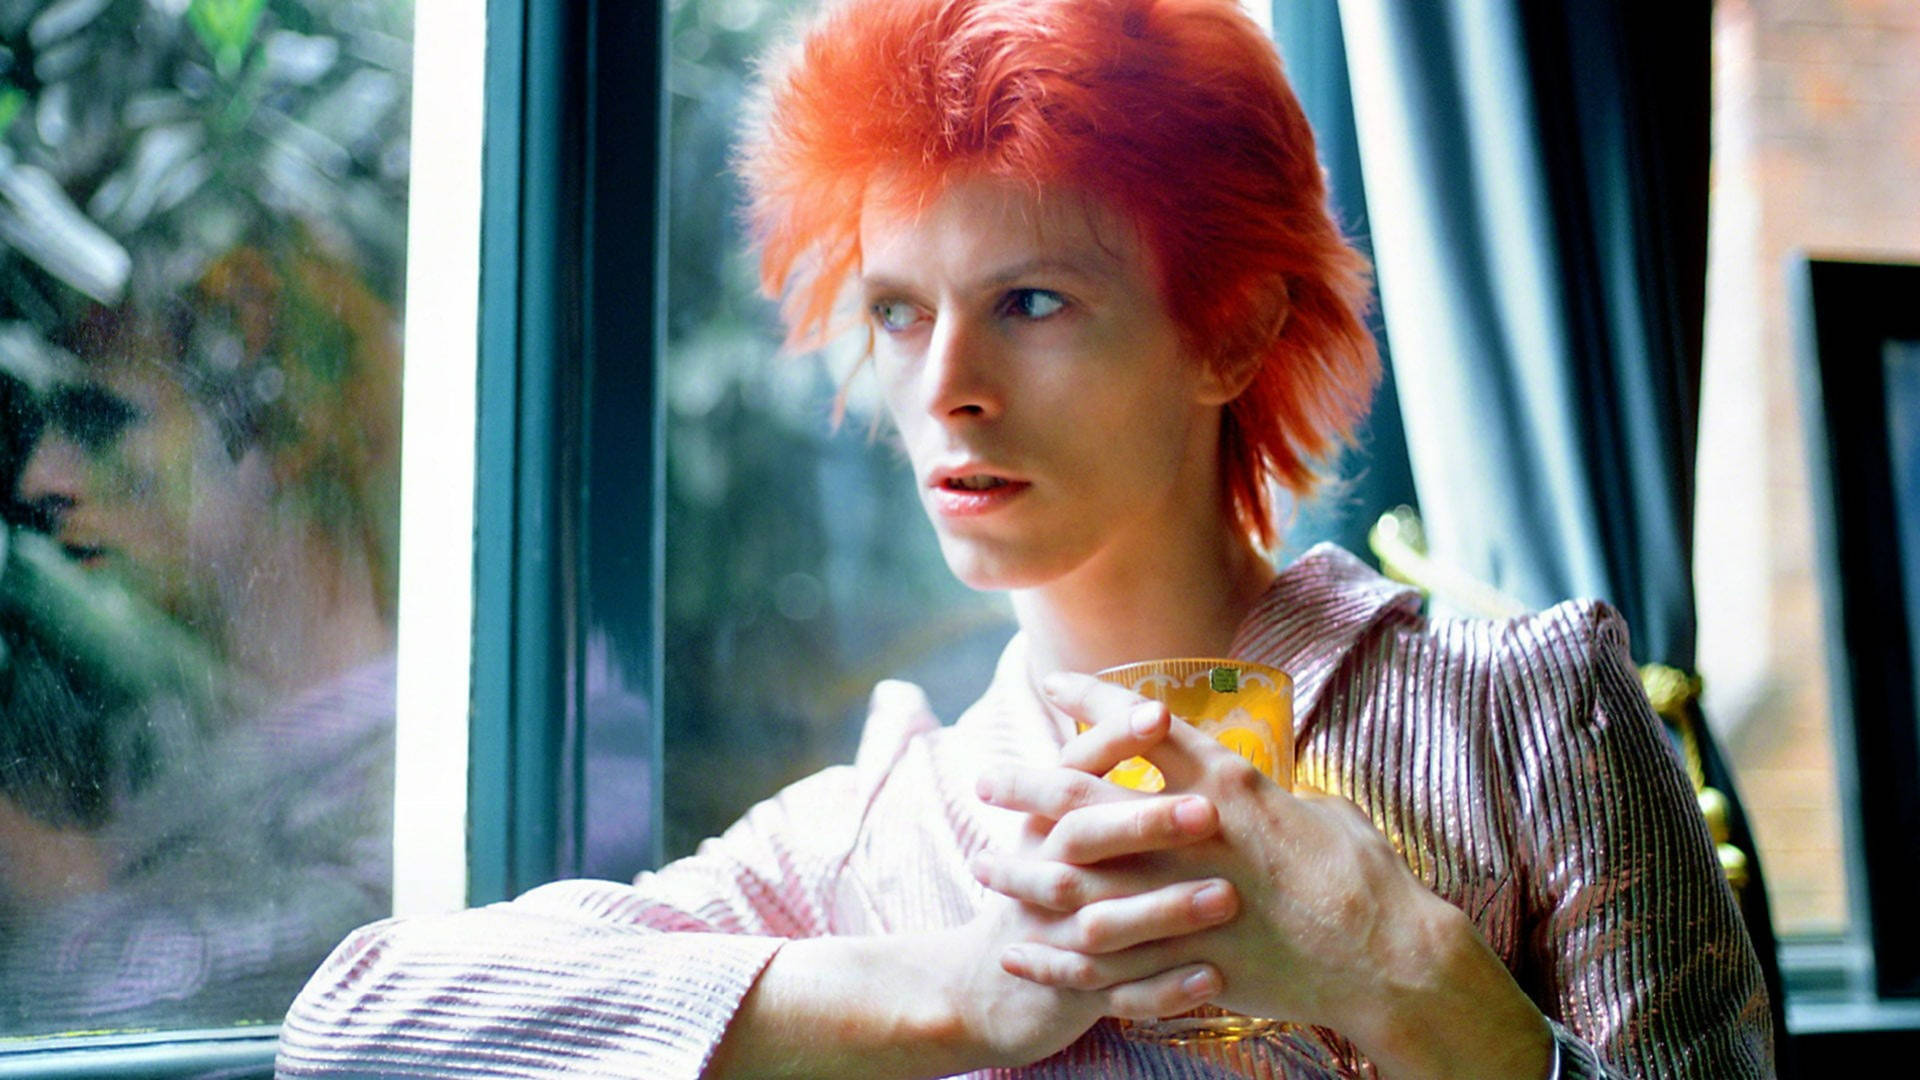 David Bowie With Orange Hair